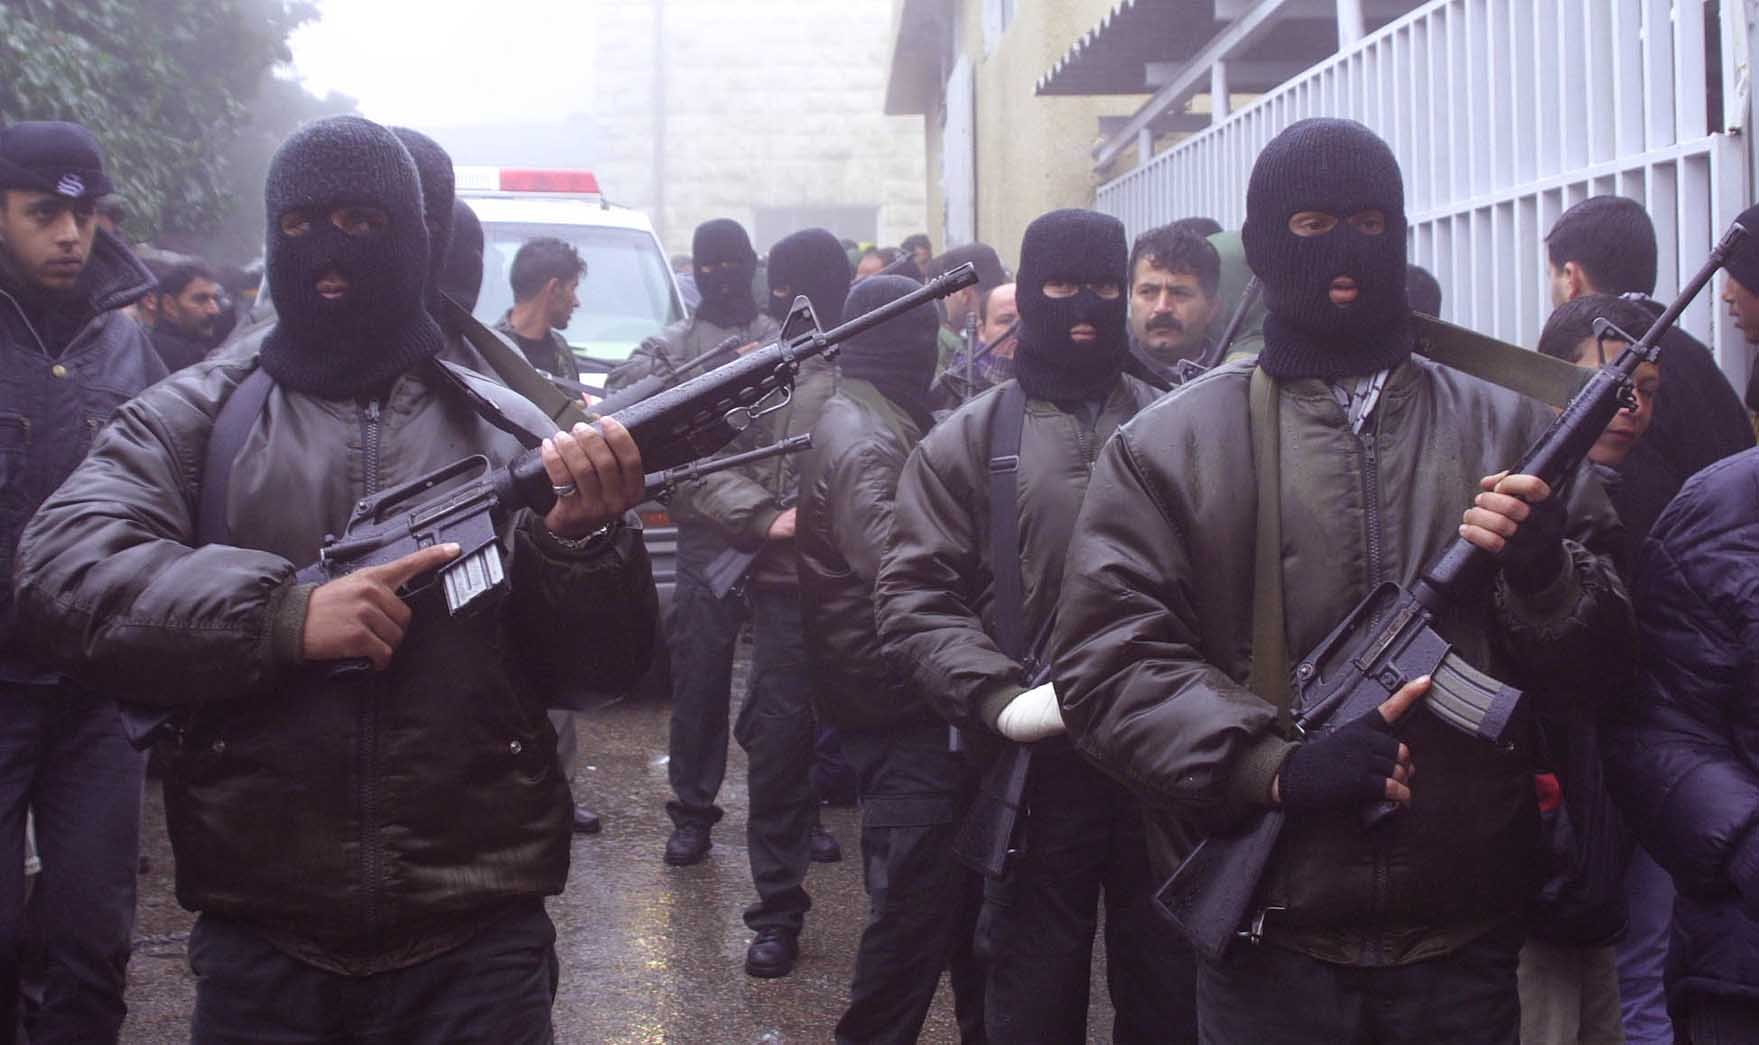 Видео со стороны террористов. Террористические группировки в России. Вооруженные бандиты.